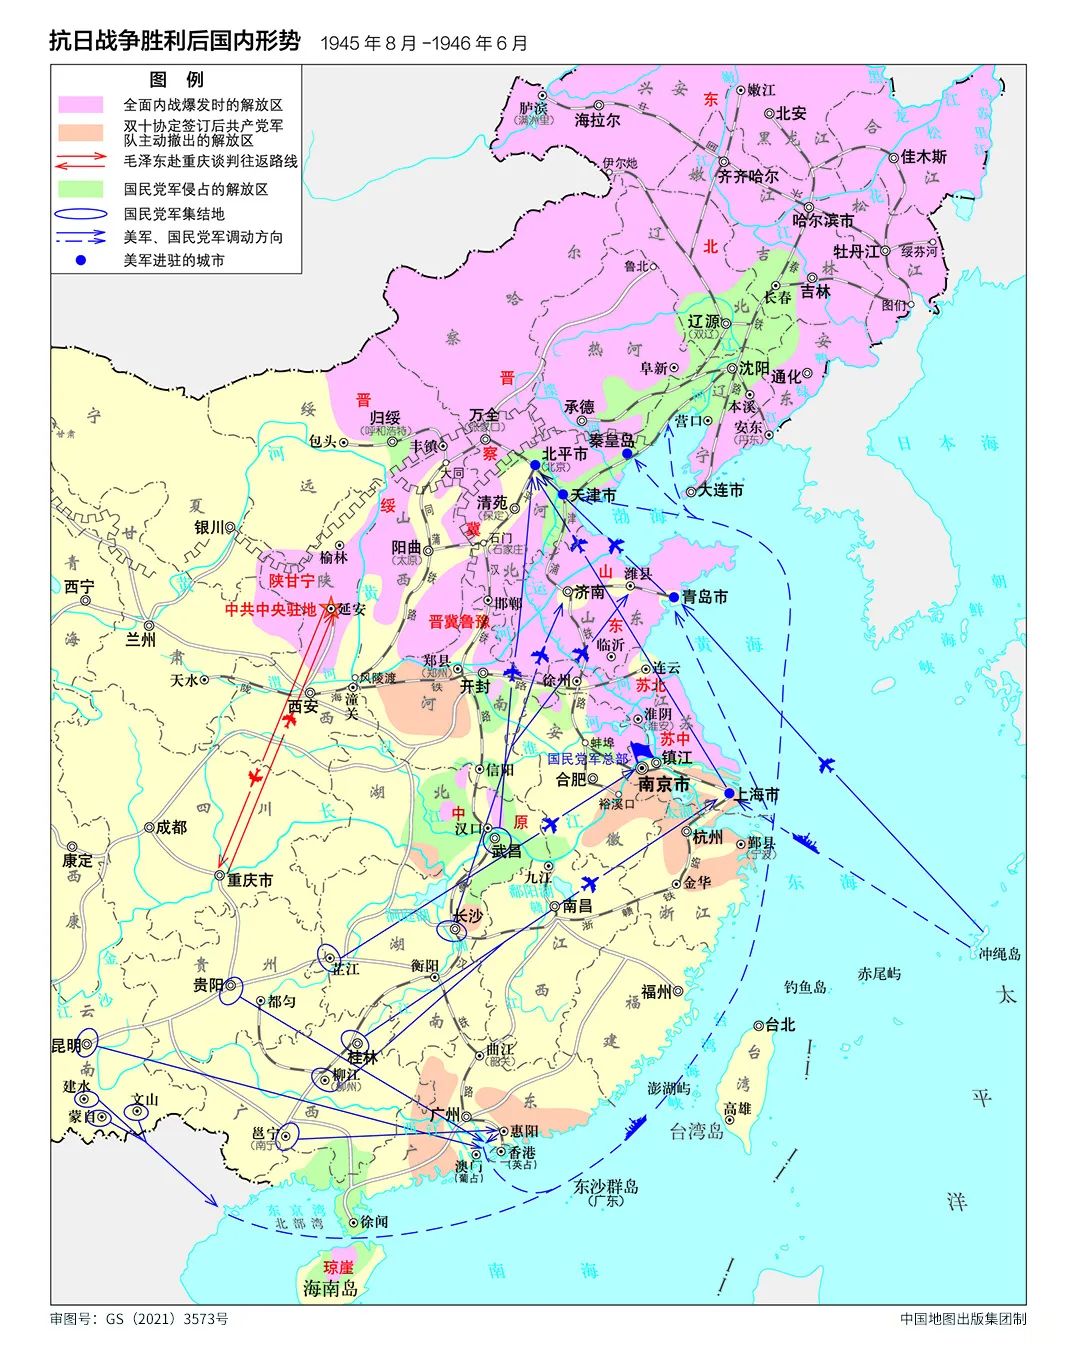 自媒体热点>正文> 中国地图出版集团编制的《中国共产党100年地图集》